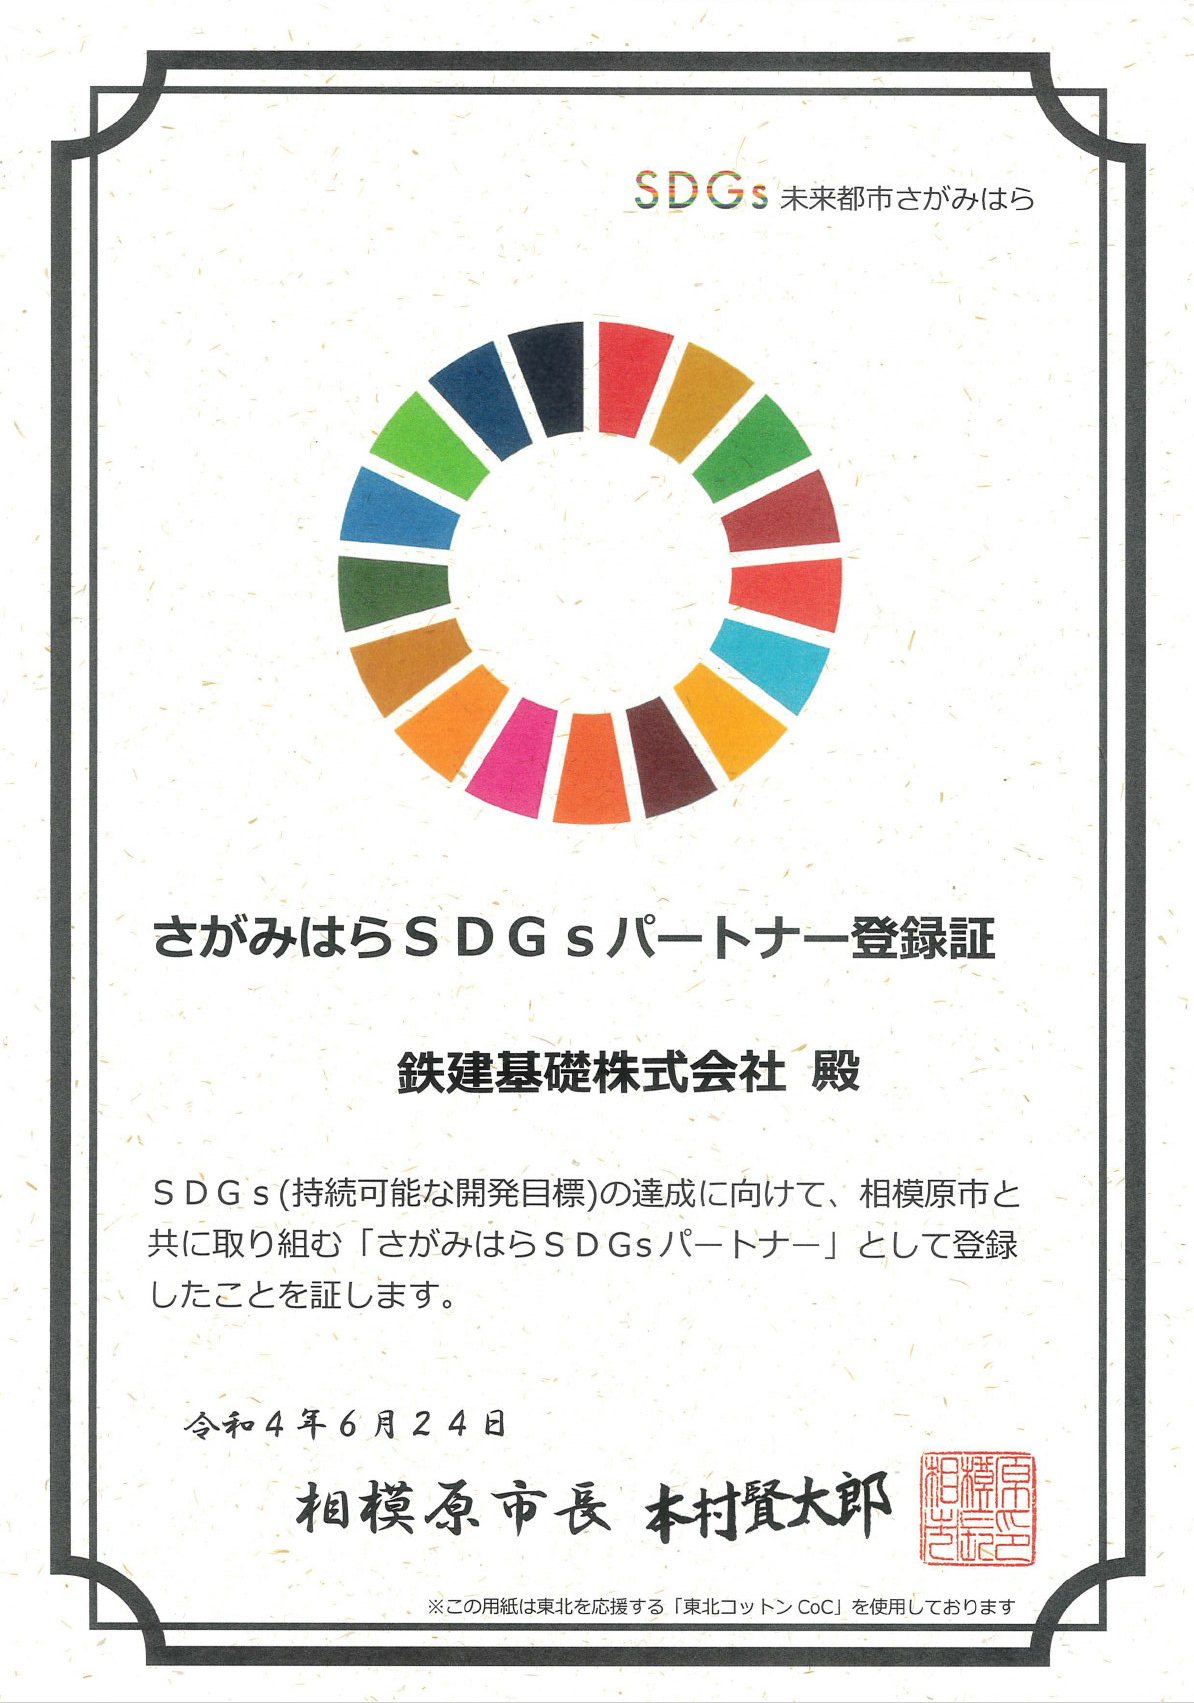 相模原市SDGsパートナーとして登録させていただきました。